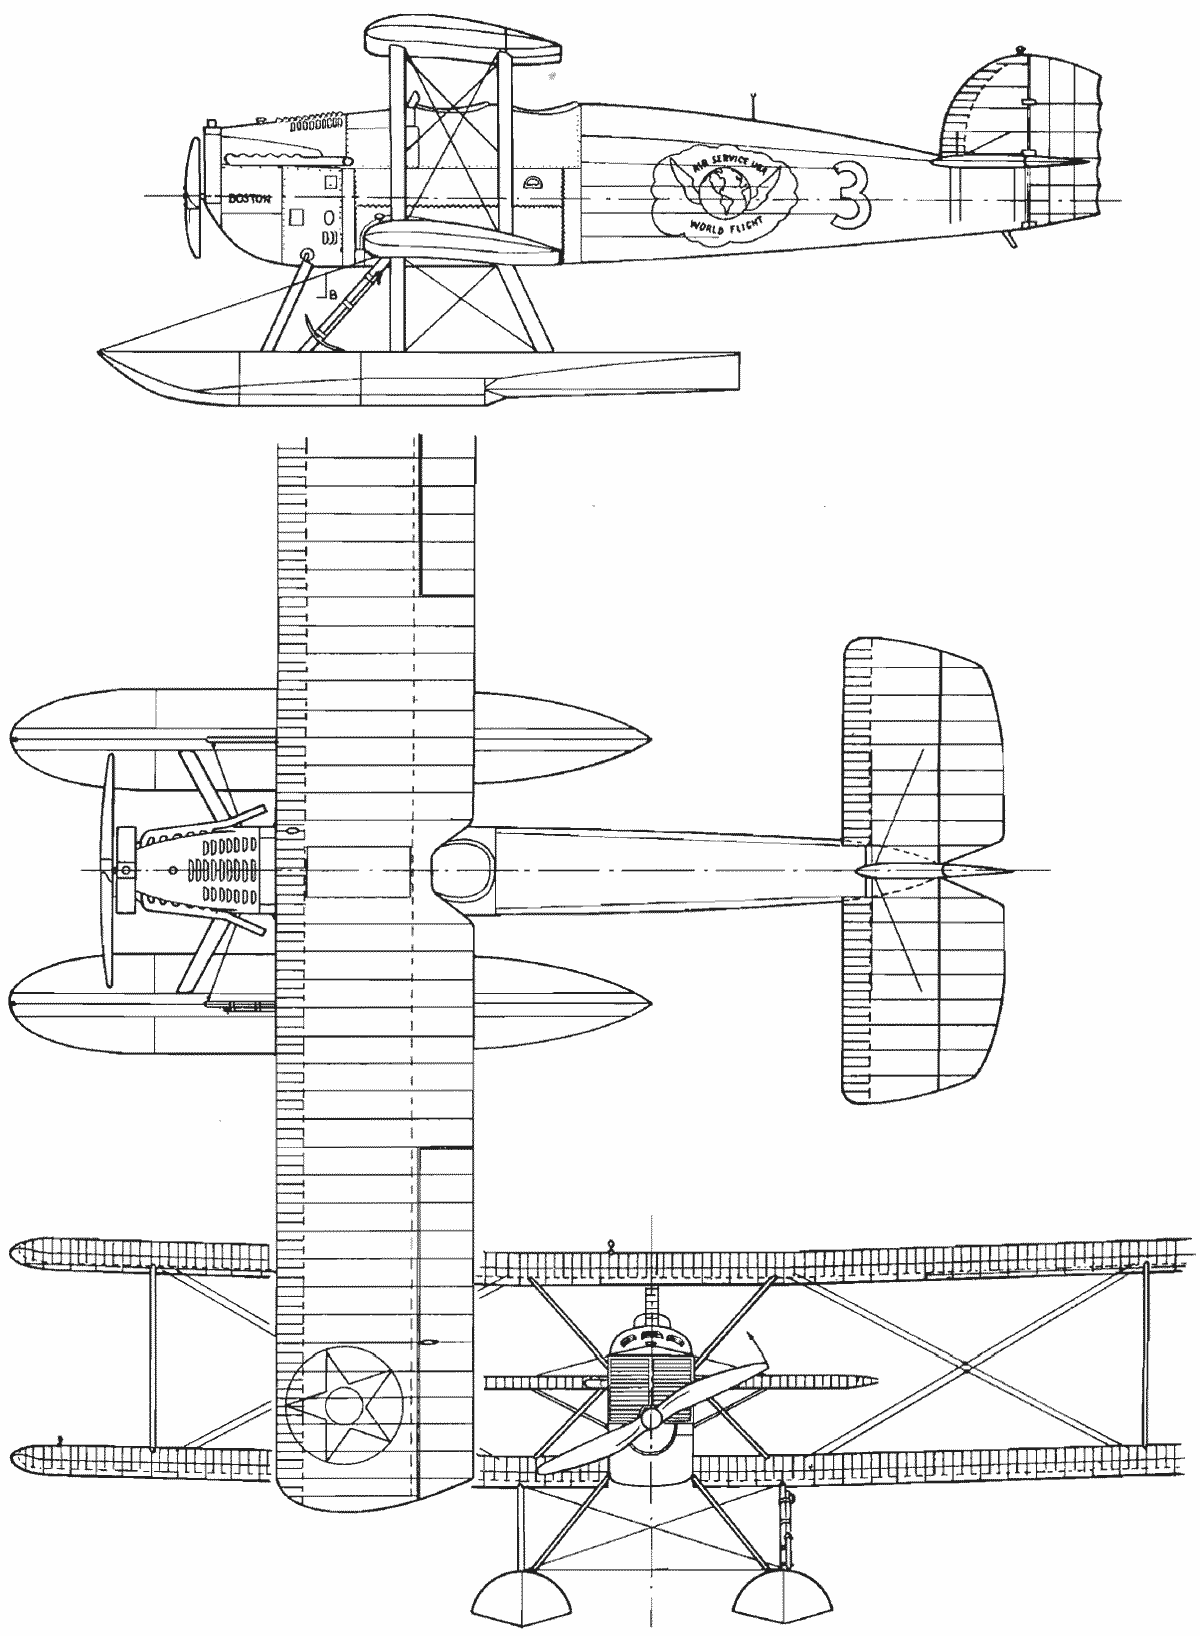 Douglas World Cruiser blueprint